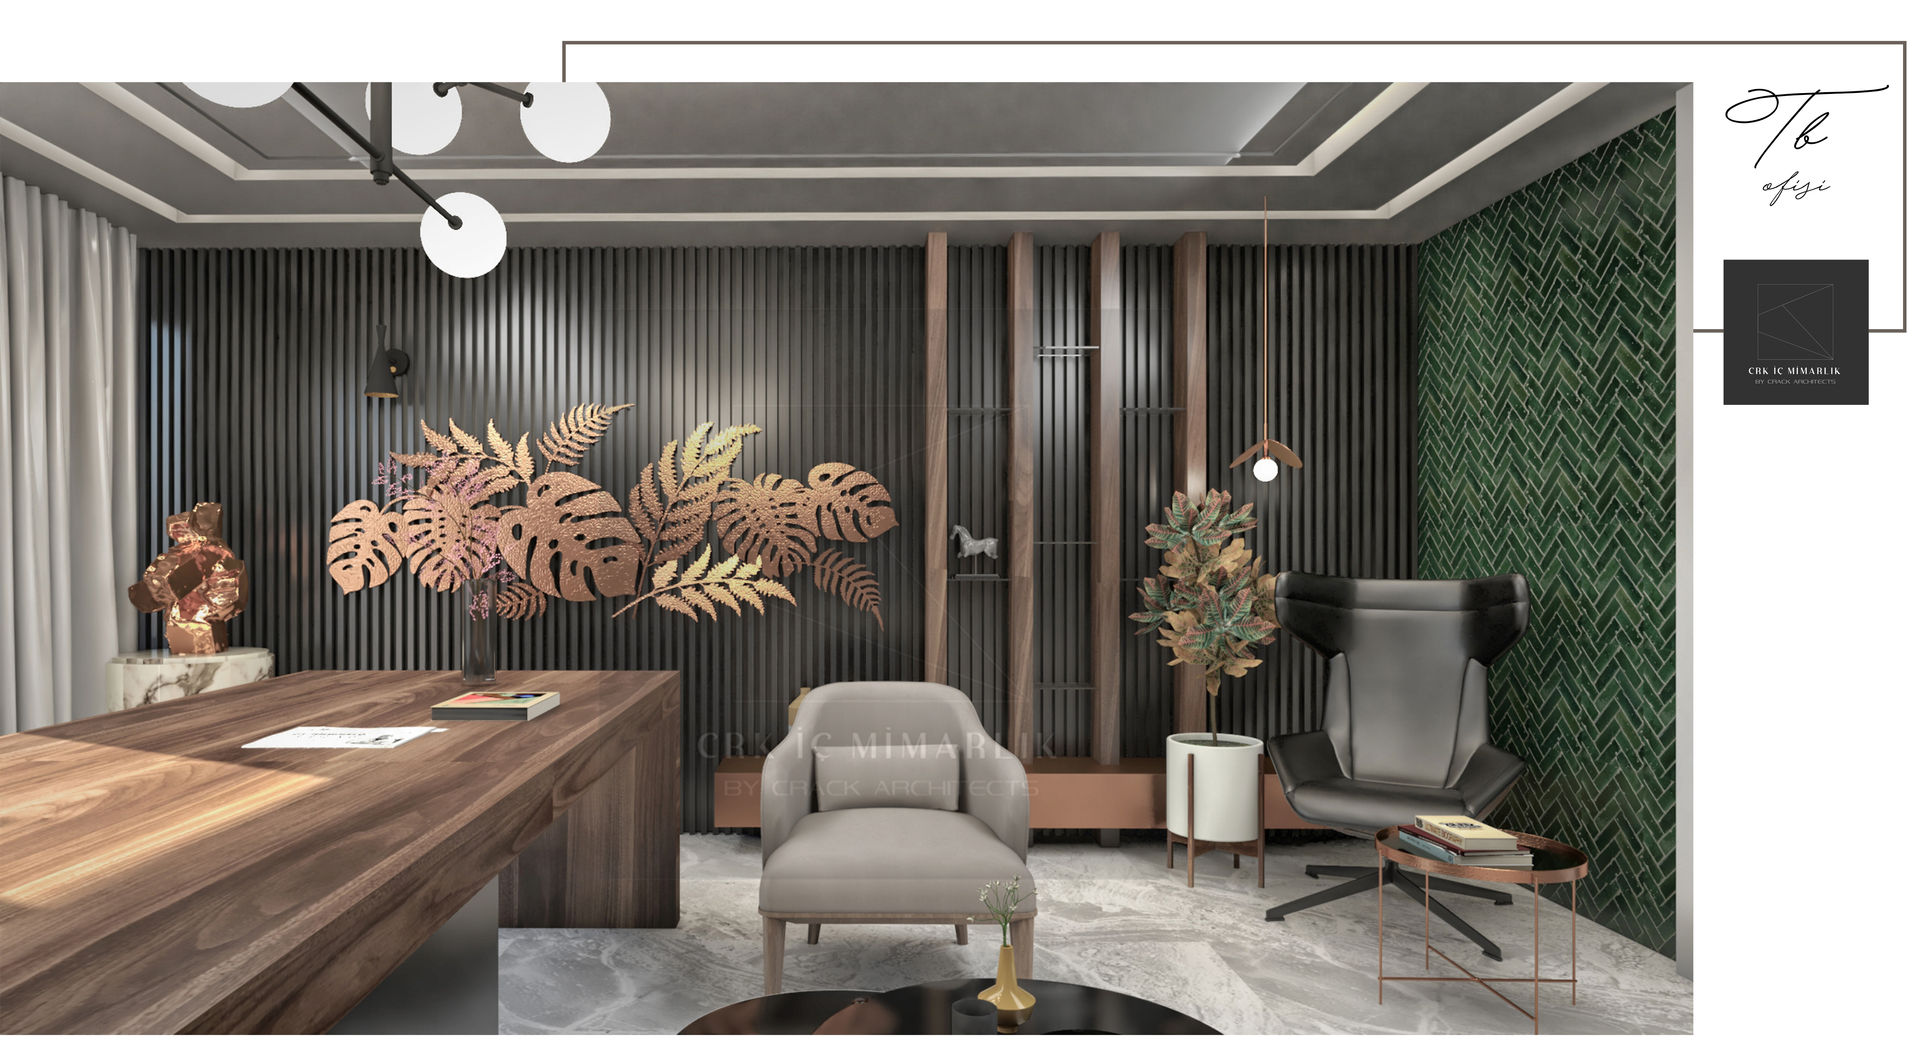 Sultan Ahmet Ofis Projesi, CRK İÇ MİMARLIK CRK İÇ MİMARLIK Ruang Komersial Kayu Wood effect Office spaces & stores